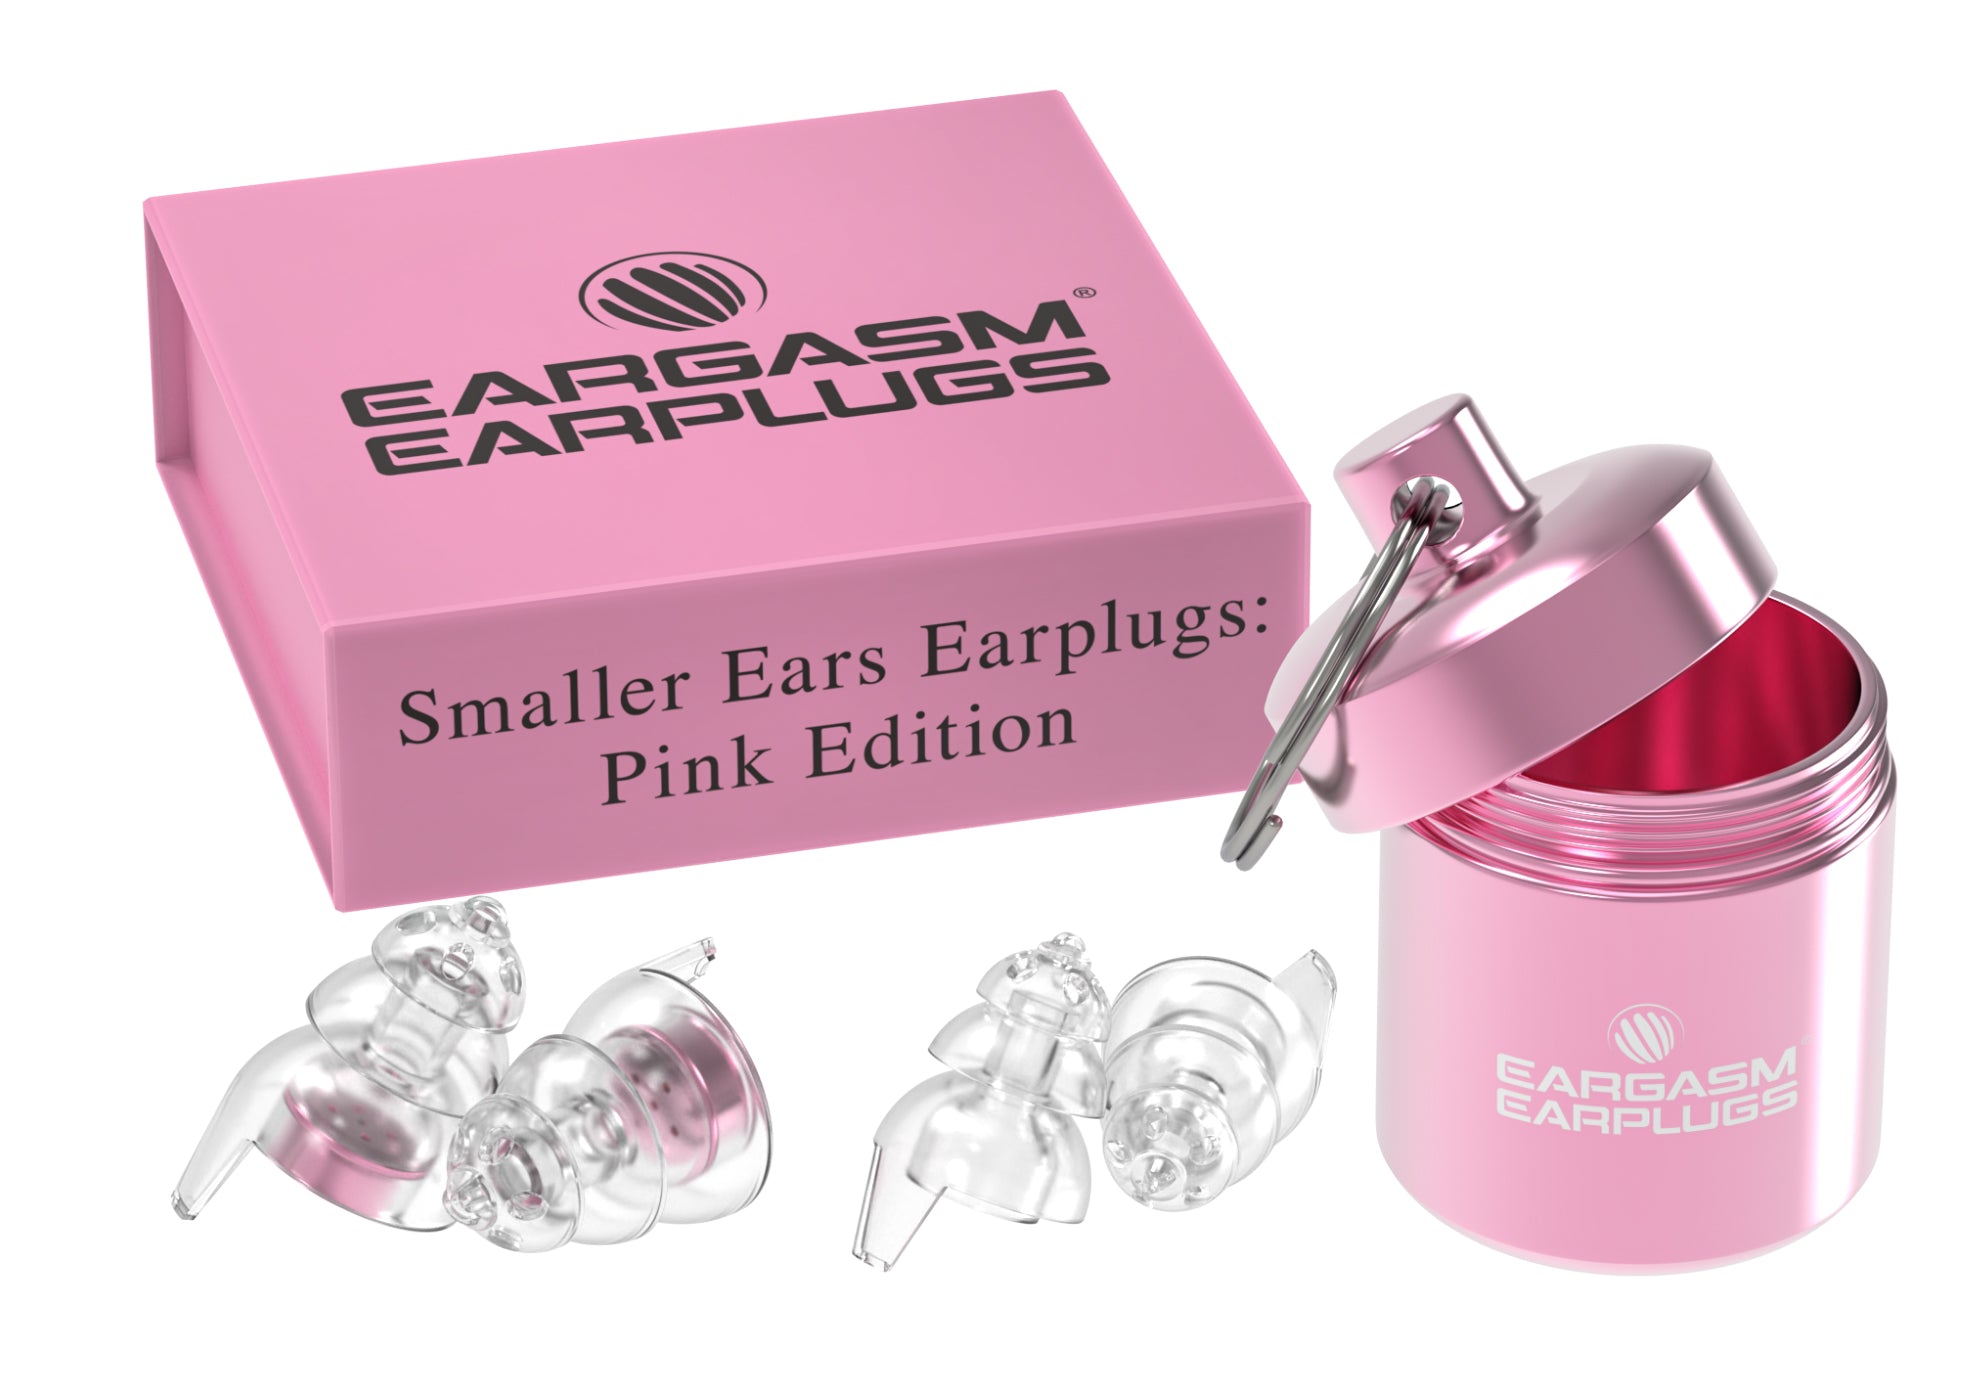 Smaller Ears Earplugs: Pink Edition